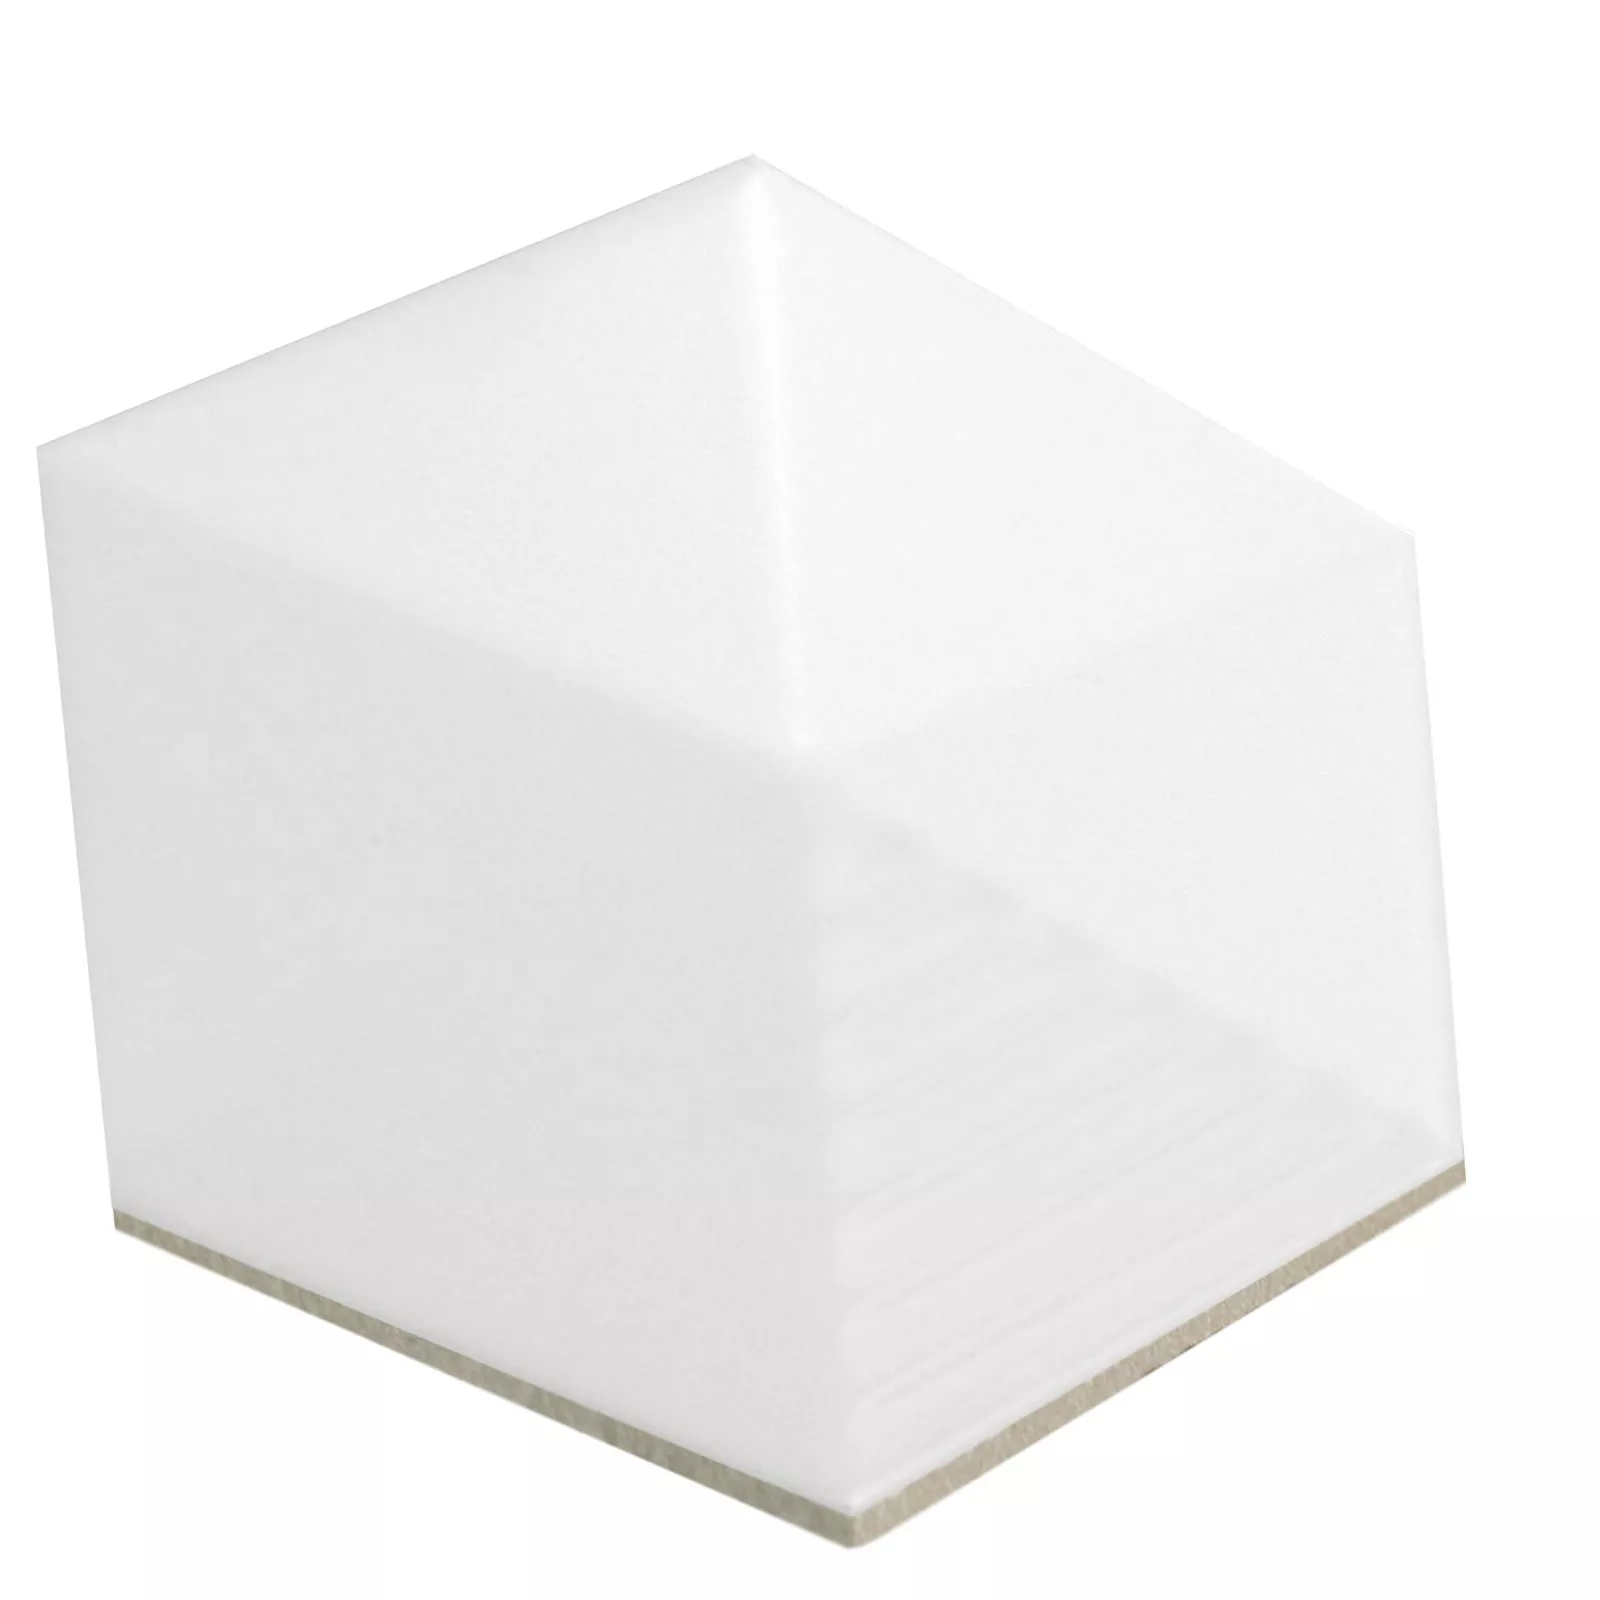 Muestra Revestimientos Rockford 3D Hexagonales 12,4x10,7cm Blanco Mate